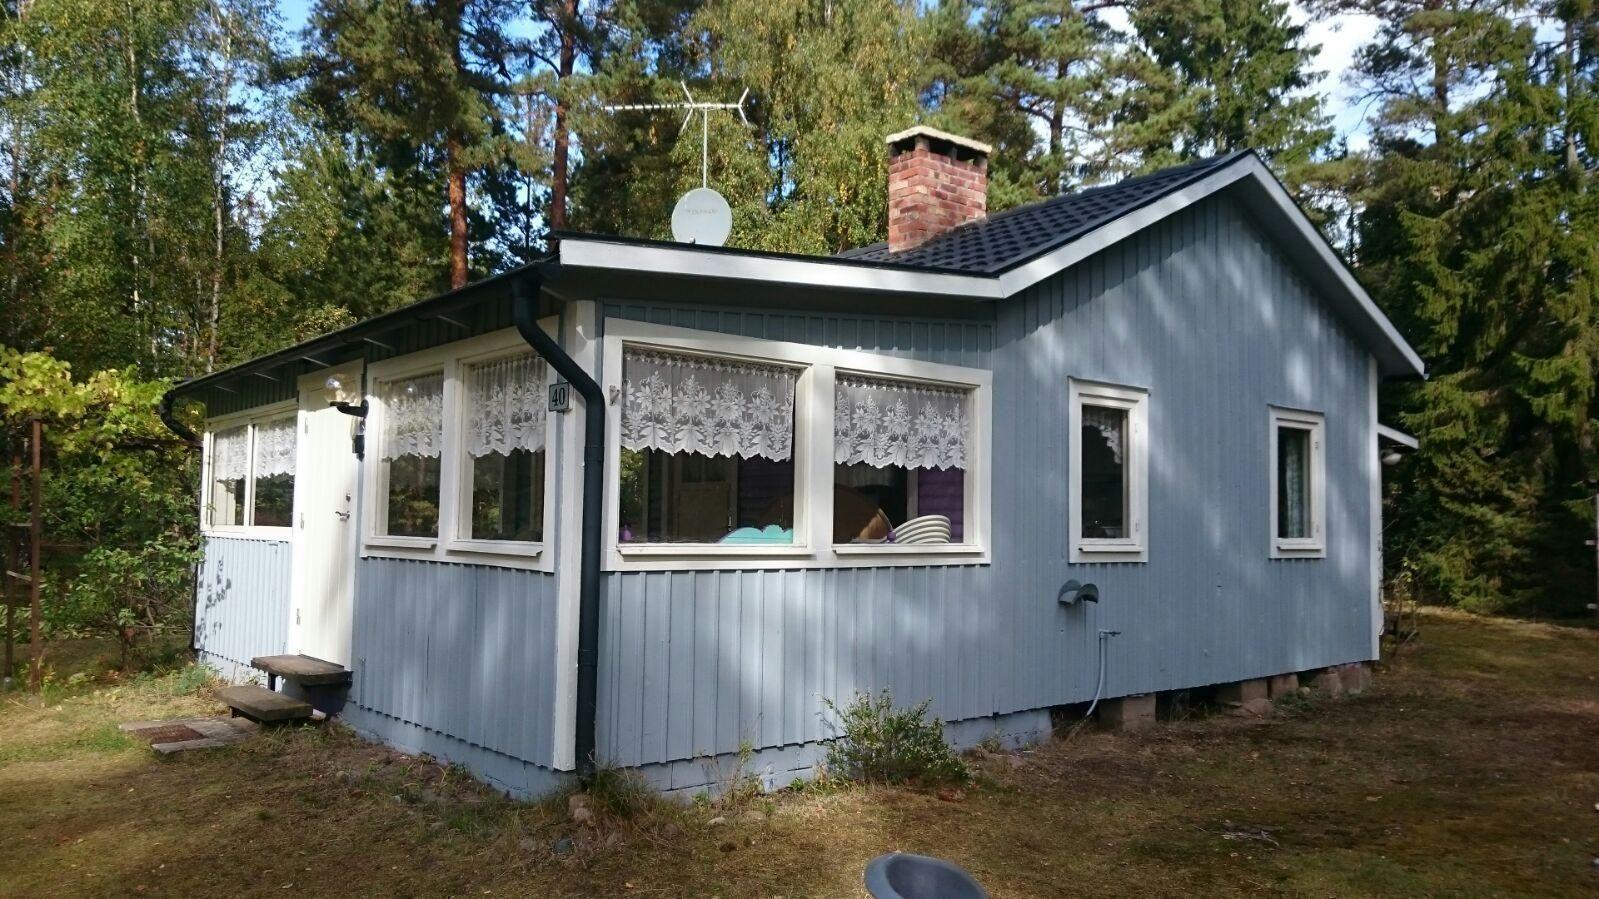  Idyllisches Ferienhaus in ruhiger Lage  Ferienhaus in Schweden